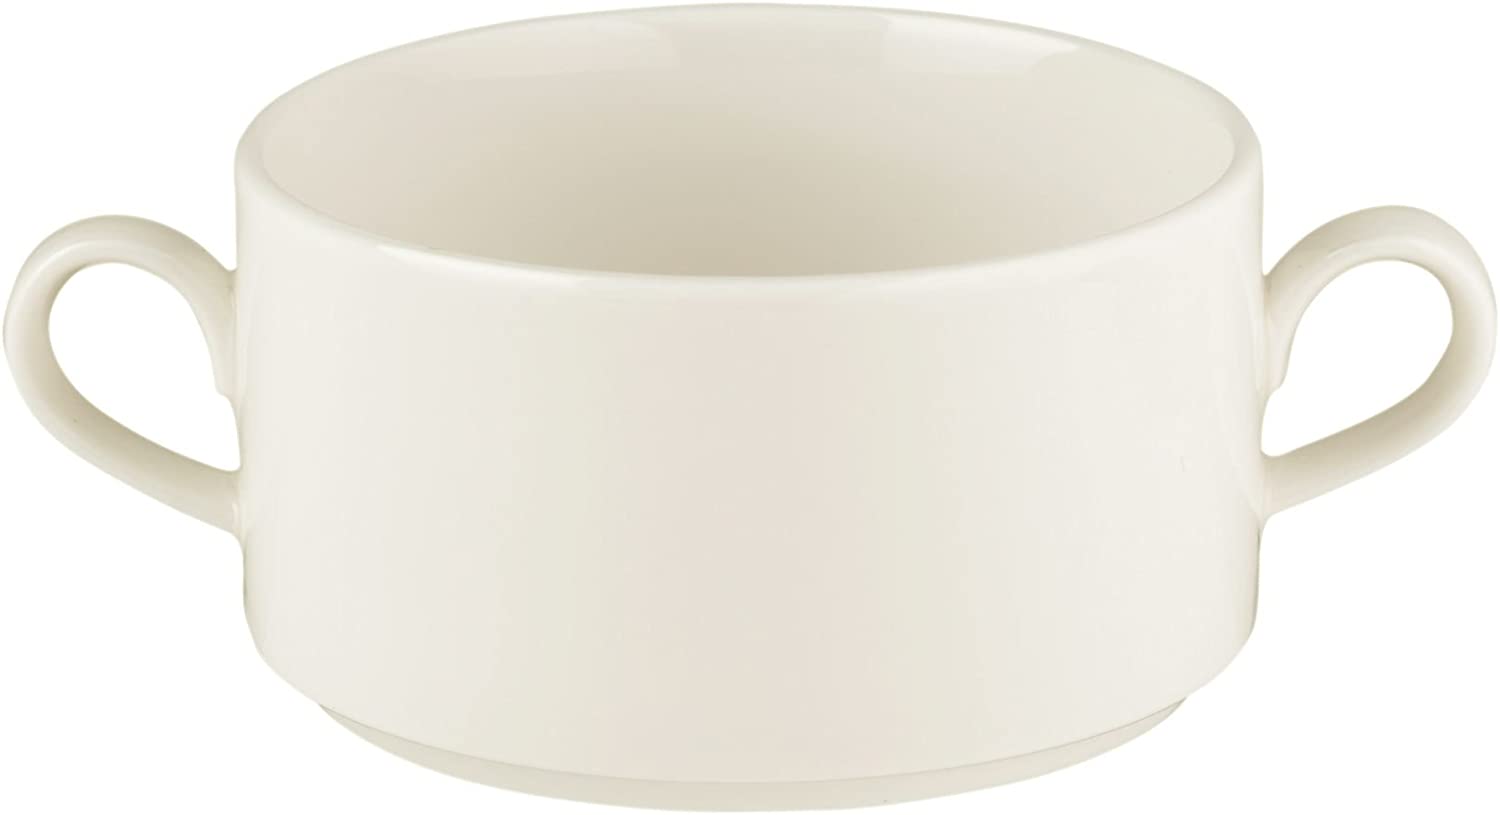 Soup cup 9.8 cm Maxim 00003 by Seltmann Weiden